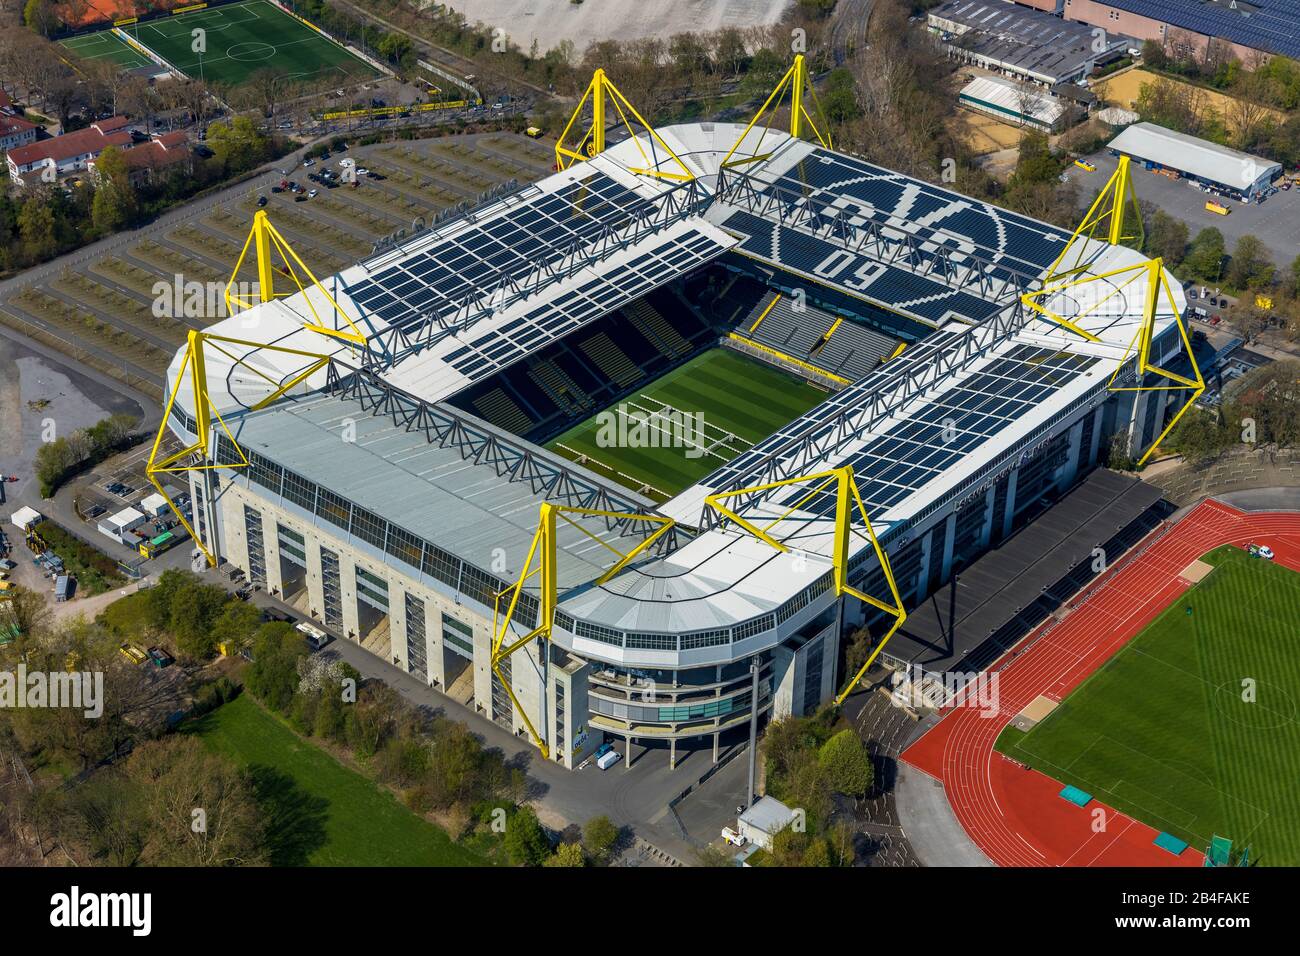 Vue aérienne du stade de football BVB signal Iduna Park et du stade Rote Erde à Dortmund dans la région de la Ruhr dans l'état fédéral de Rhénanie-du-Nord-Westphalie, Allemagne. Banque D'Images